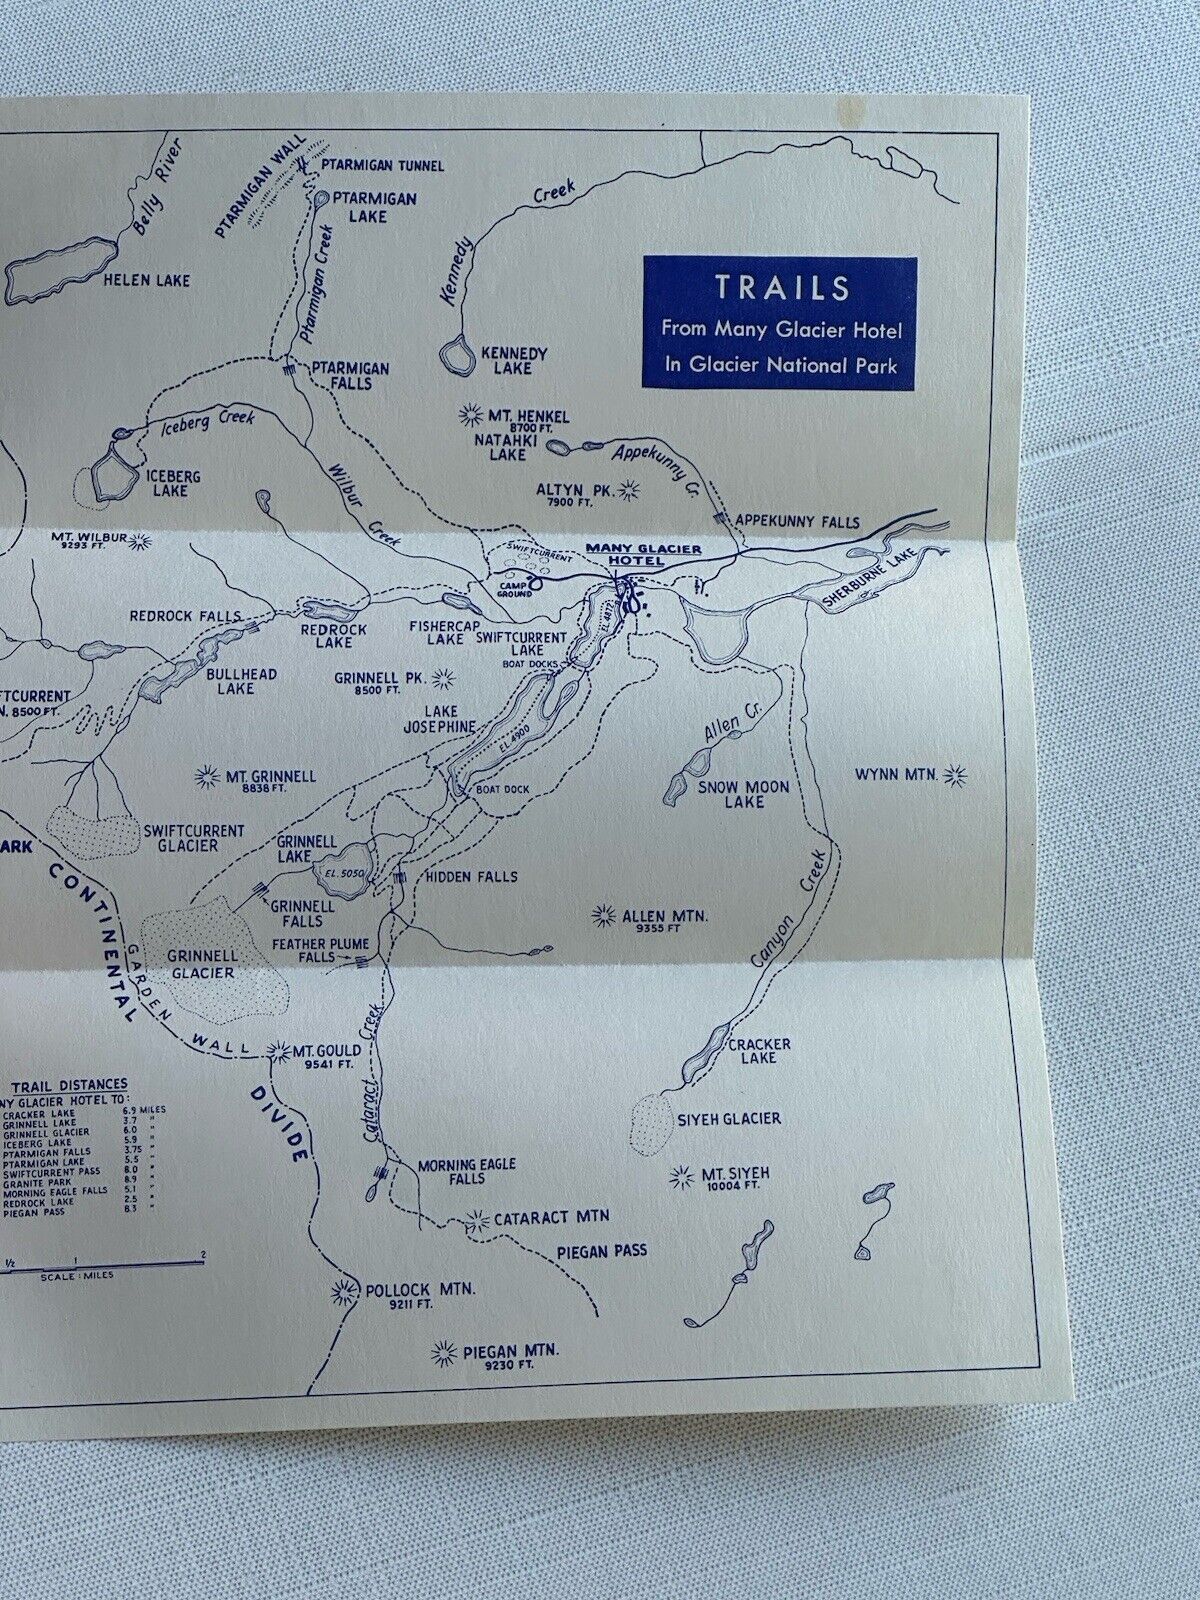 GLACIER NATIONAL PARK TRAILS MAP BOOKLET VINTAGE